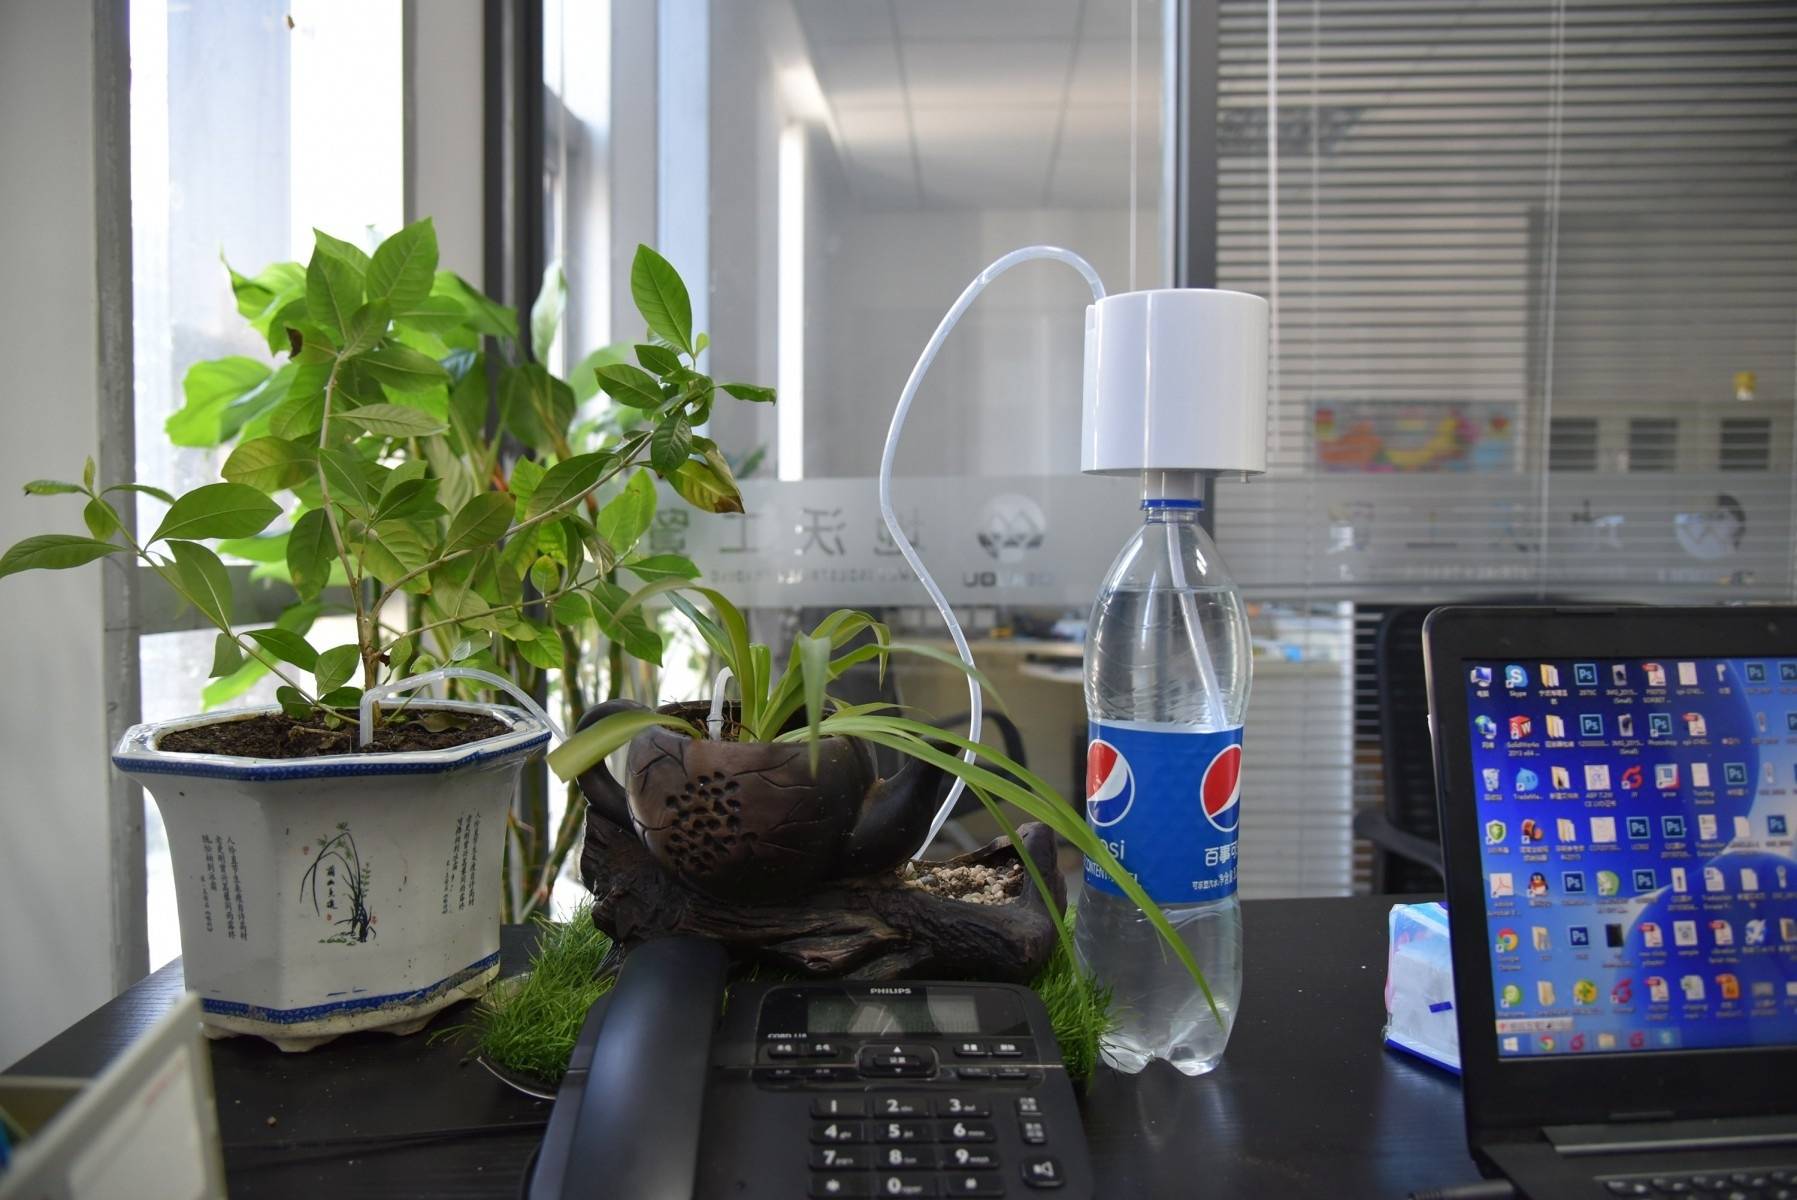 5 комнатных растений, которые выживут без полива 2 недели